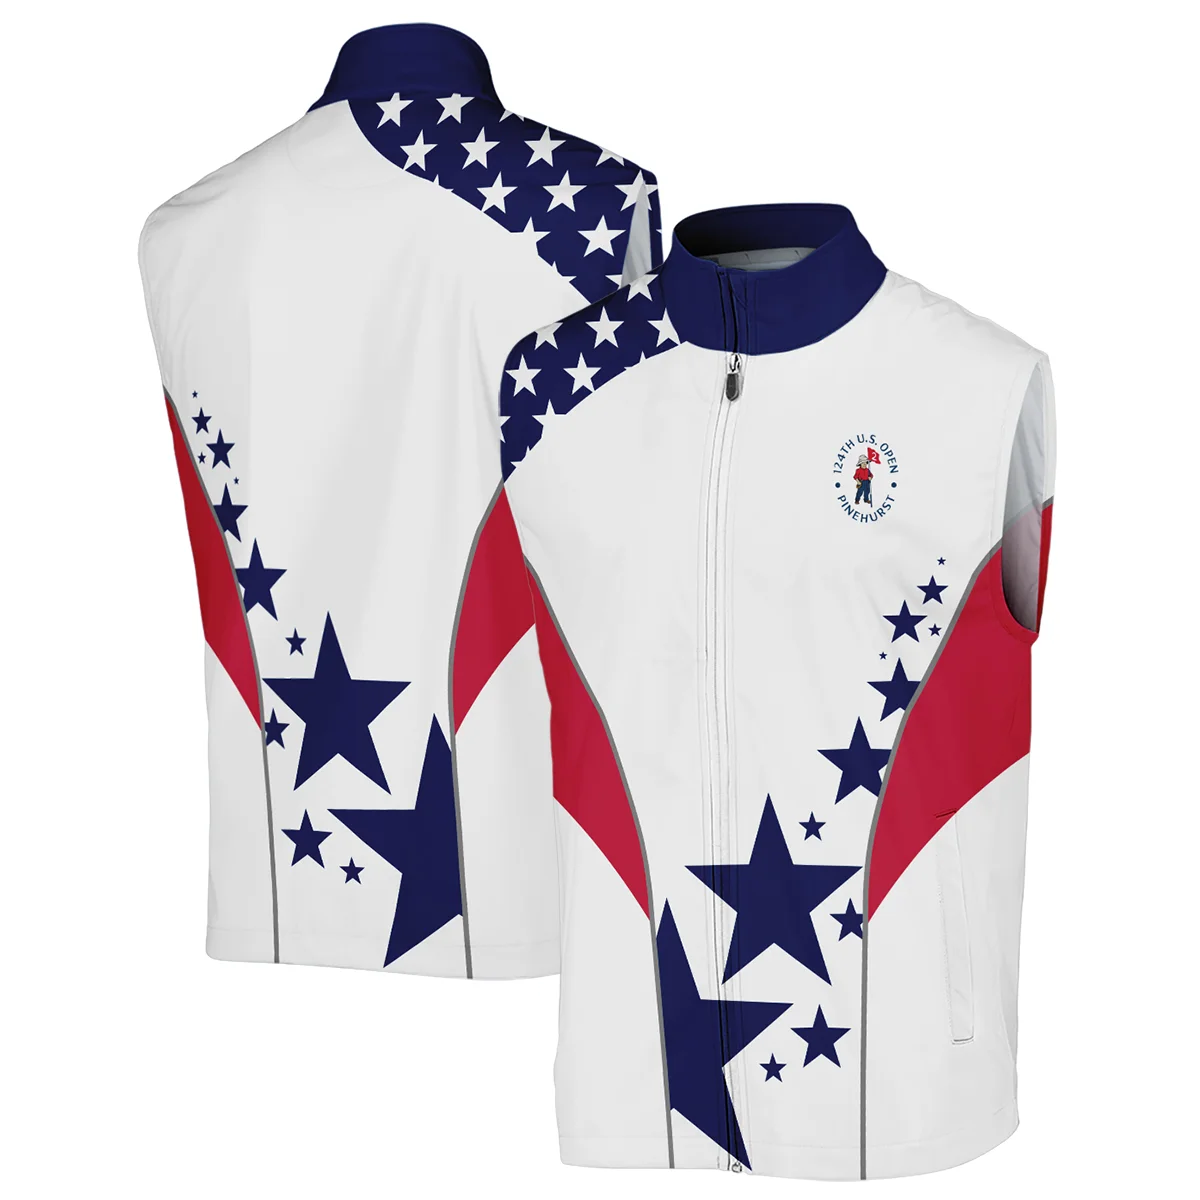 124th U.S. Open Pinehurst Ping Stars US Flag White Blue Sleeveless Jacket Style Classic Sleeveless Jacket